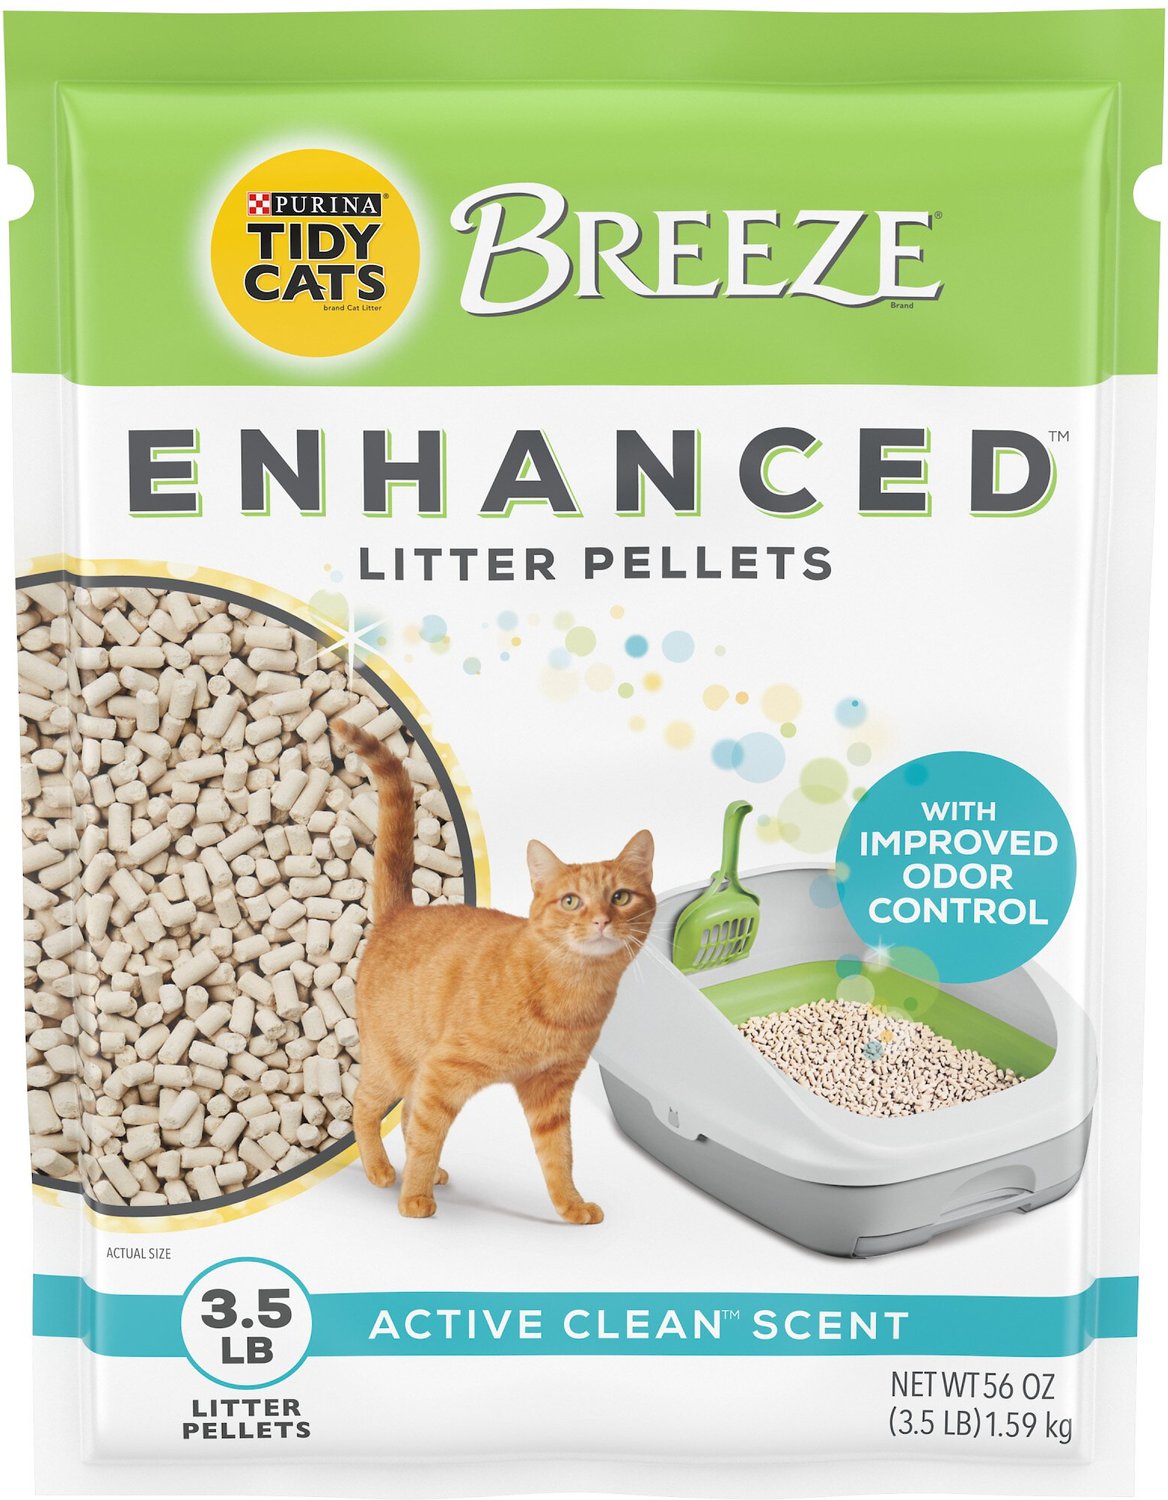 TIDY CATS Breeze Cat Litter Enhanced Pellets Refill, 3.5lb bag